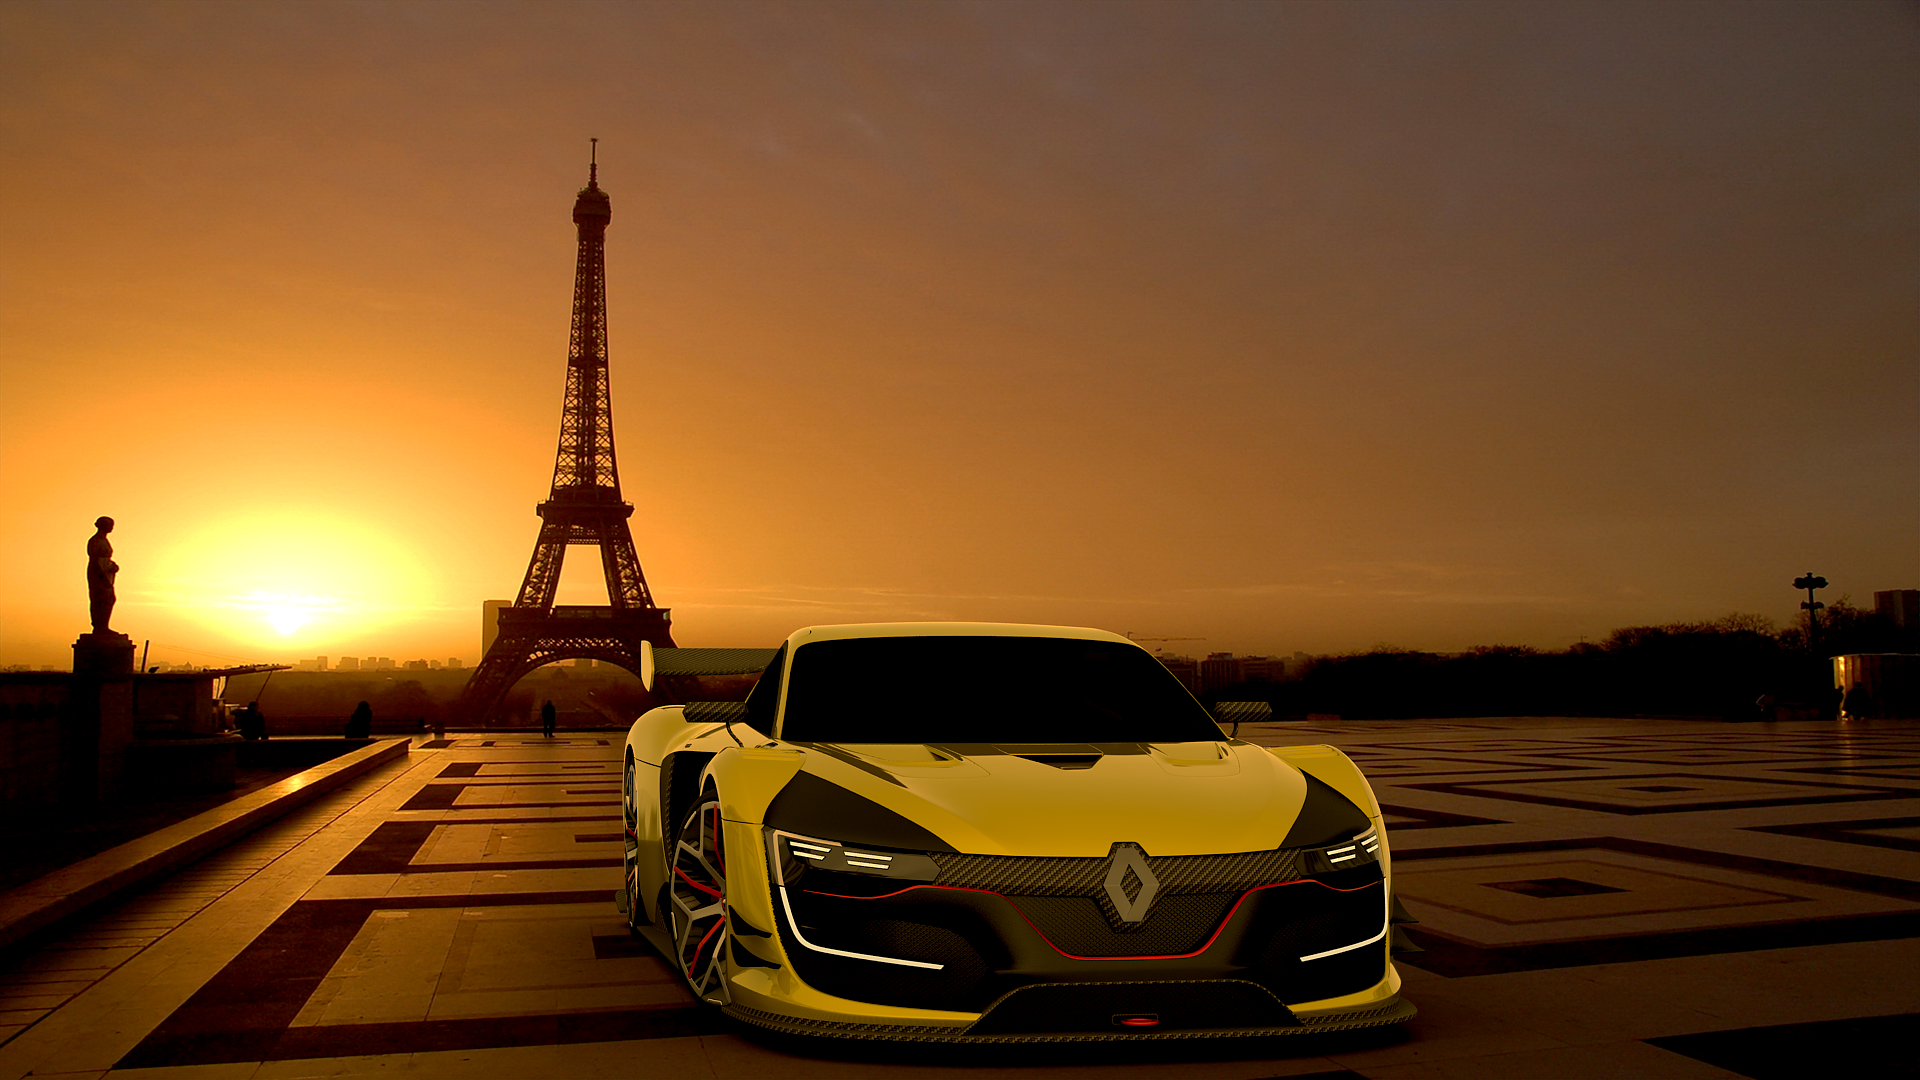 Renault Sport Wallpapers